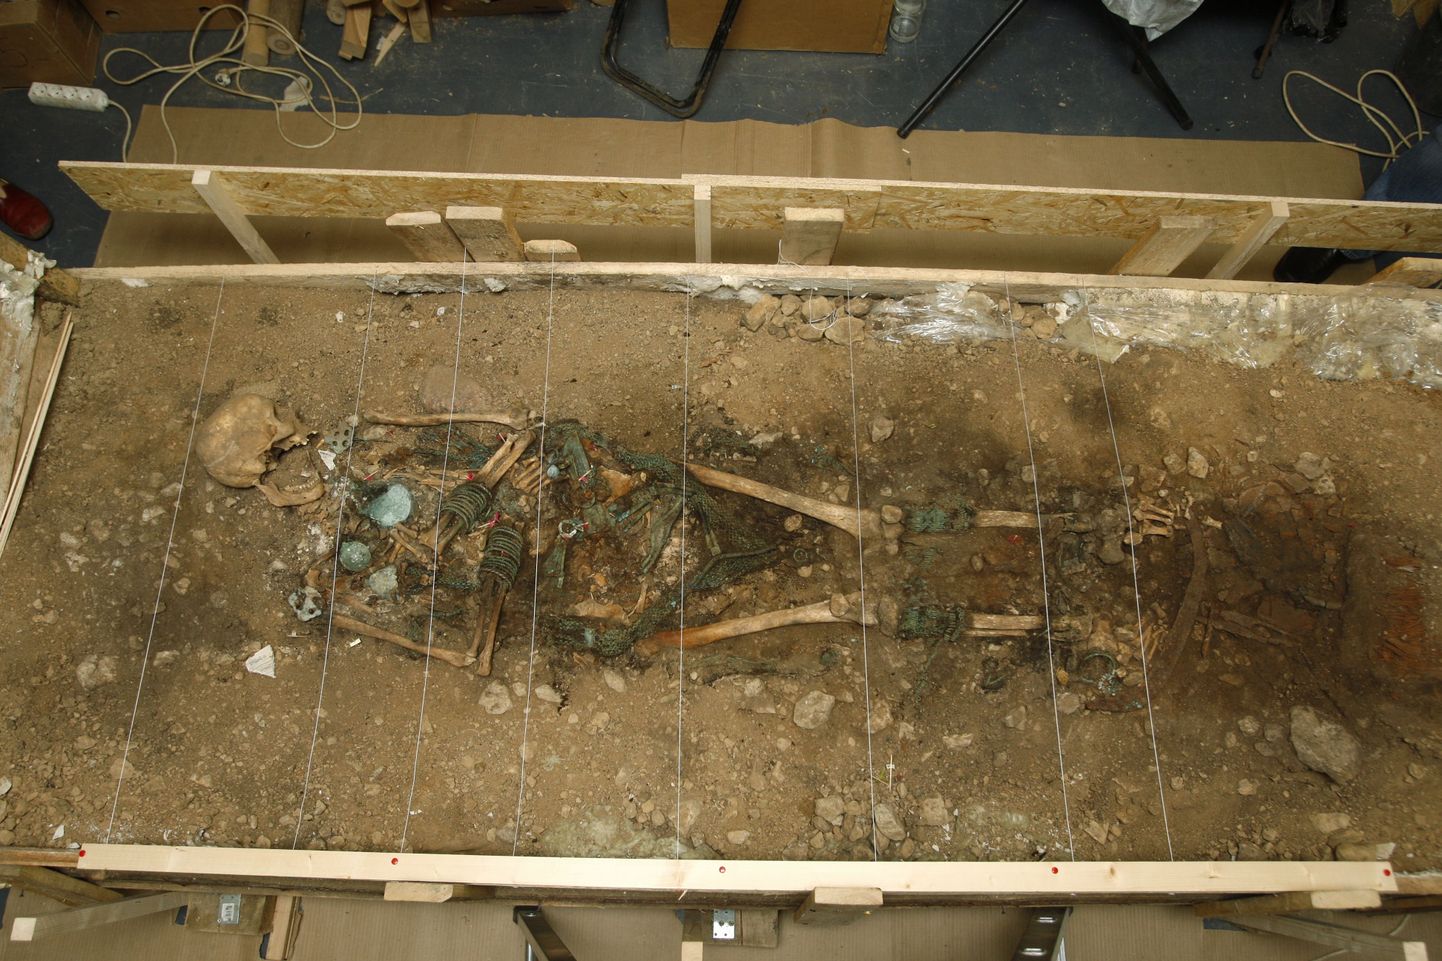 800 aasta eest Kukrusele maetud naise matuse uurimisest sai näitus ning nüüd ka loengusari.